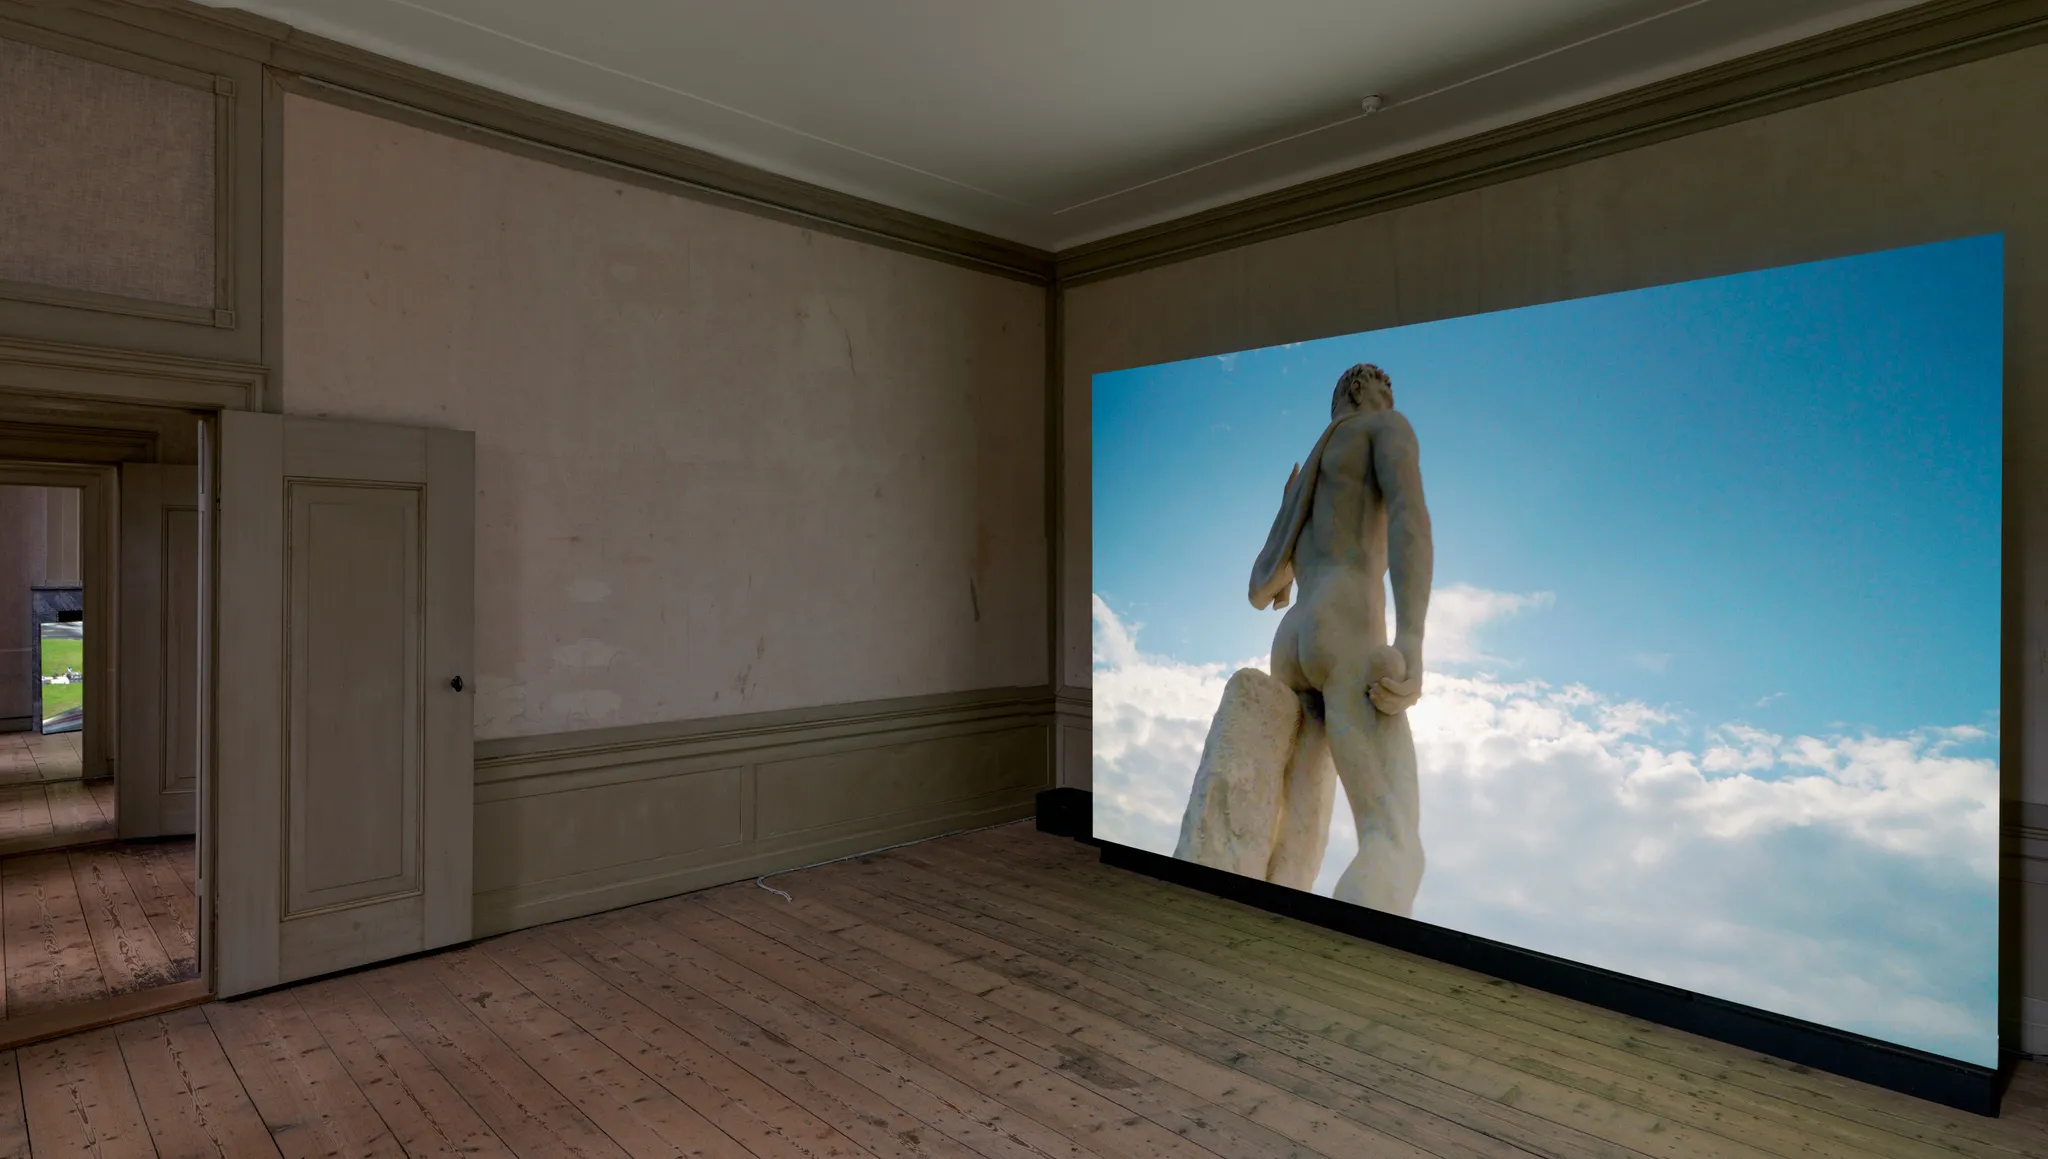 Video op een groot scherm met de achterkant van een hoog klassiek standbeeld van het Stadio dei Marmi voor een blauwe, gedeeltelijk bewolkte lucht.